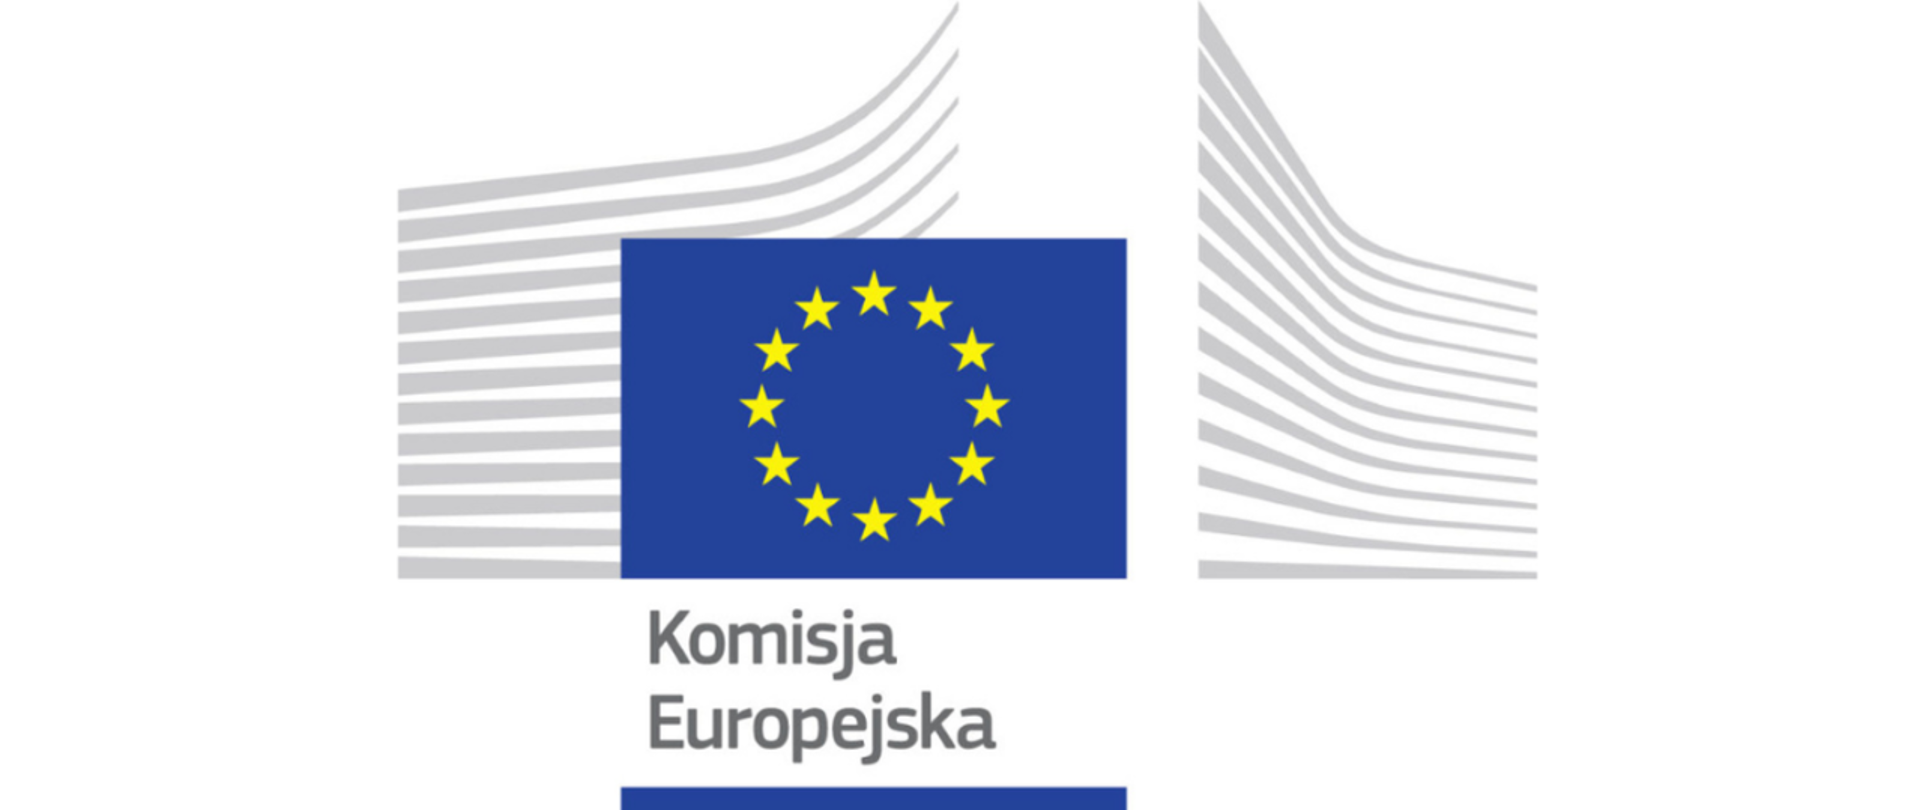 Na zdjęciu widoczna jest flaga Unii Europejskiej na tle szarych pasów. Pod spodem widnieje napis Komisja Europejska. Jest to logo Komisji Europejskiej 